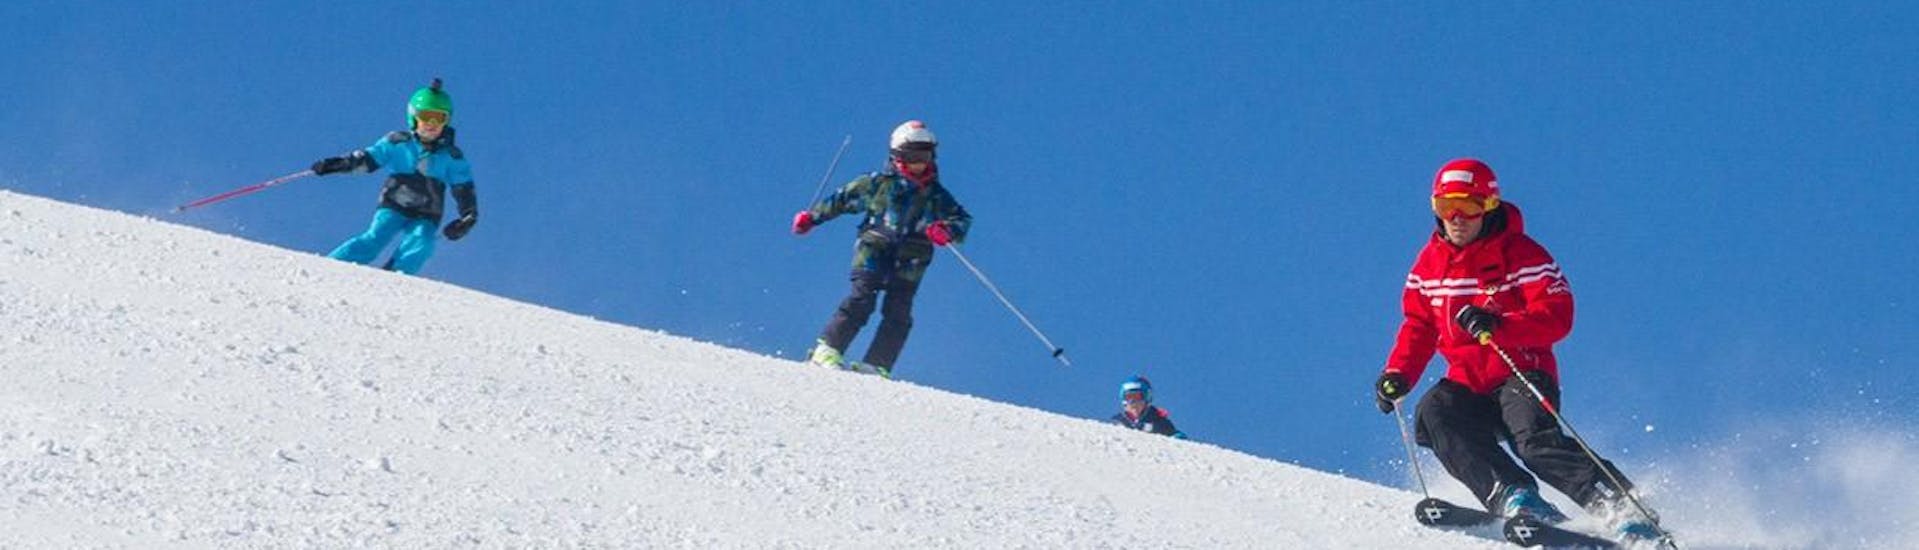 Der Skilehrer der Sertorelli Skischule Bormio ist bei den Kindern des Kinderskikurses mit Erfahrung dabei.